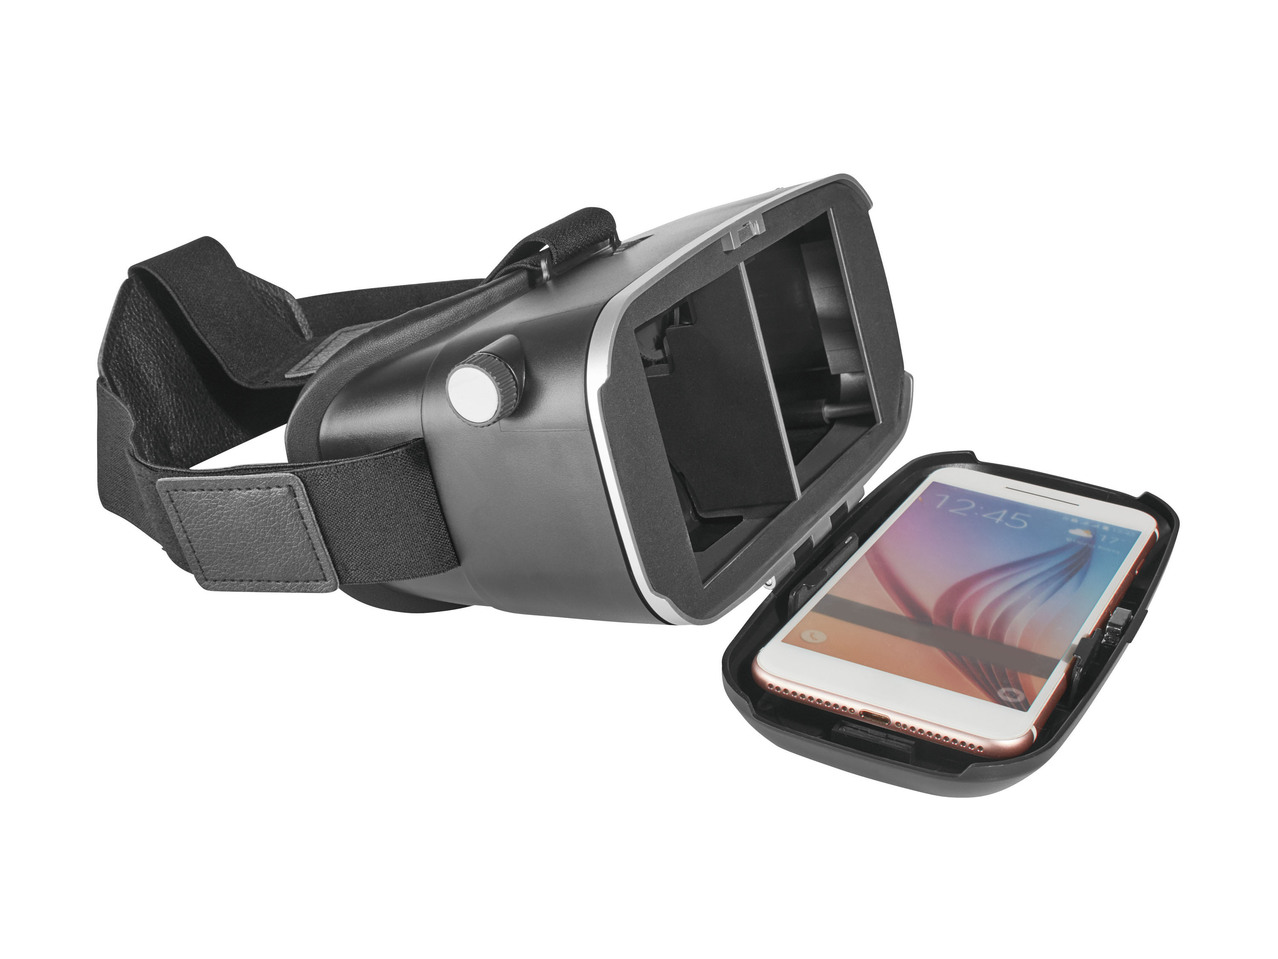 Visore realtà virtuale per smartphone